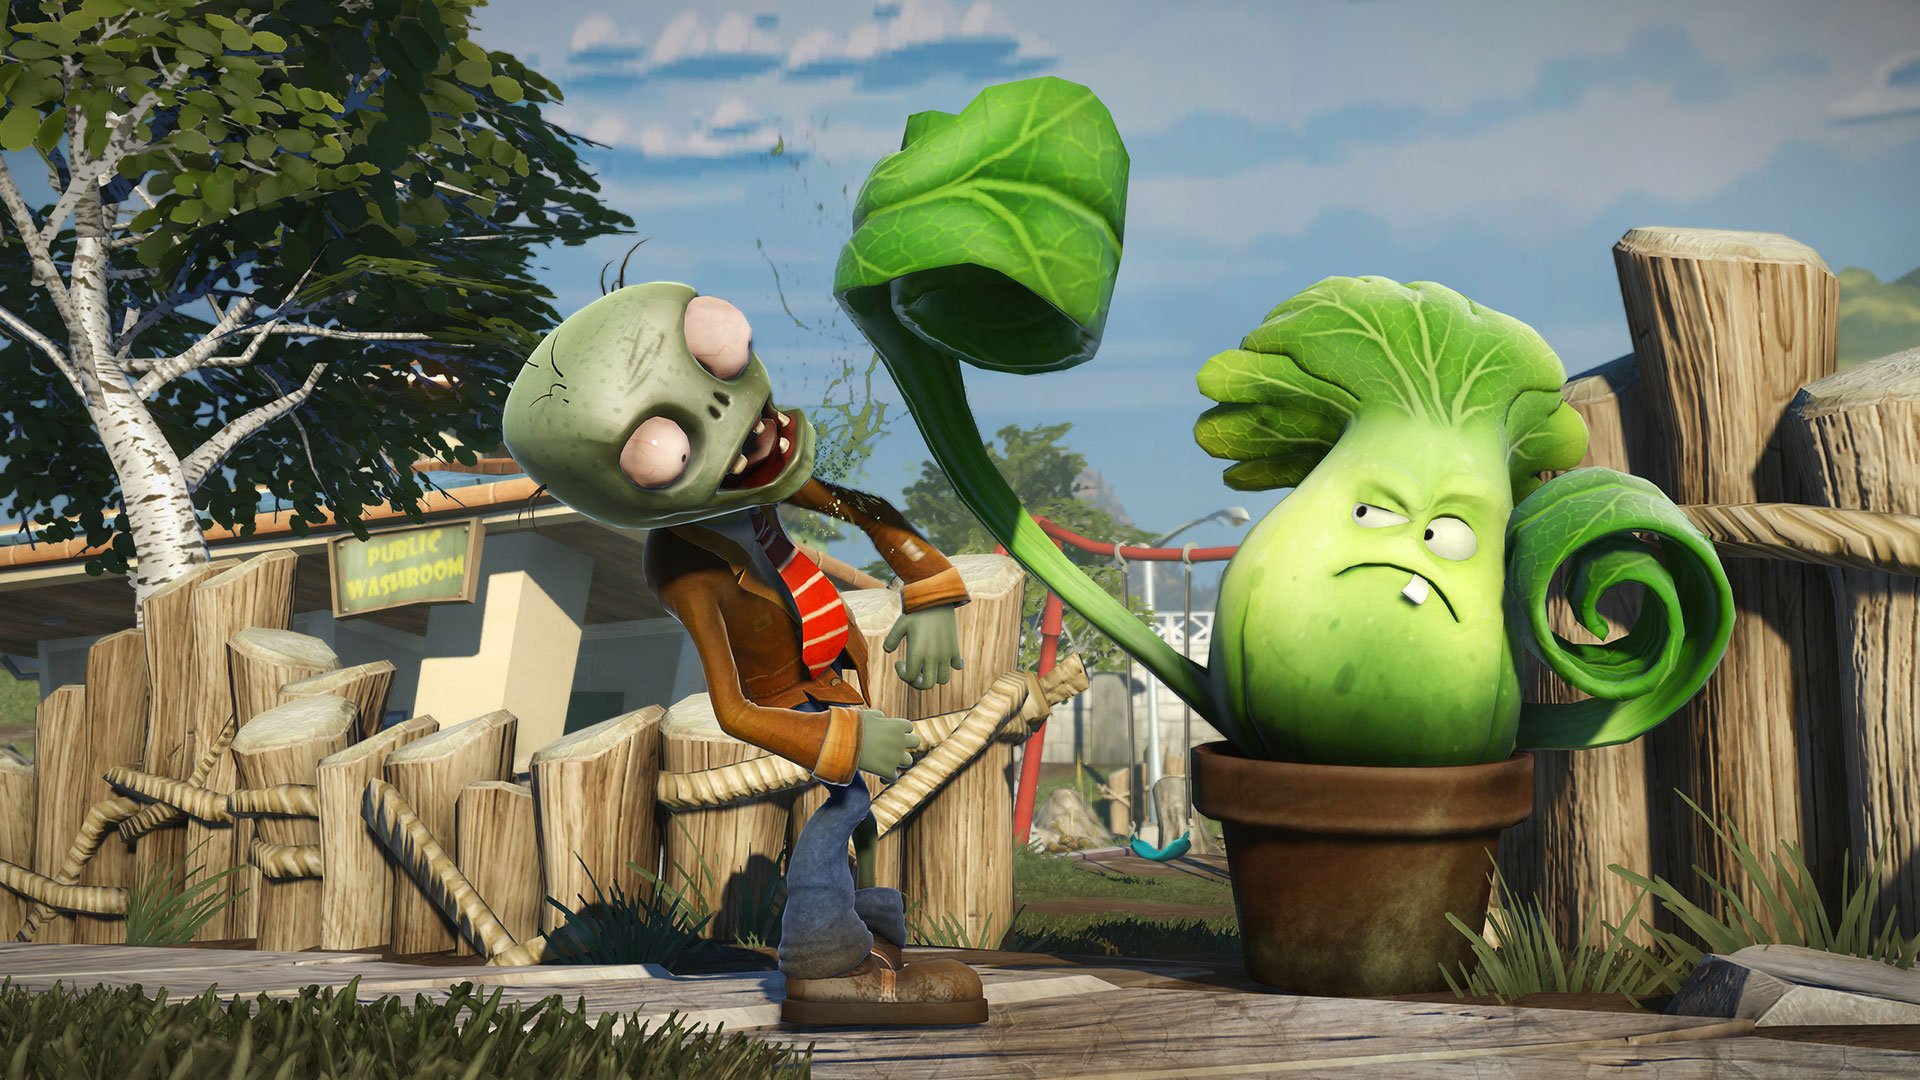 Plants vs Zombies Garden Warfare: aprenda a jogar o novo game da franquia